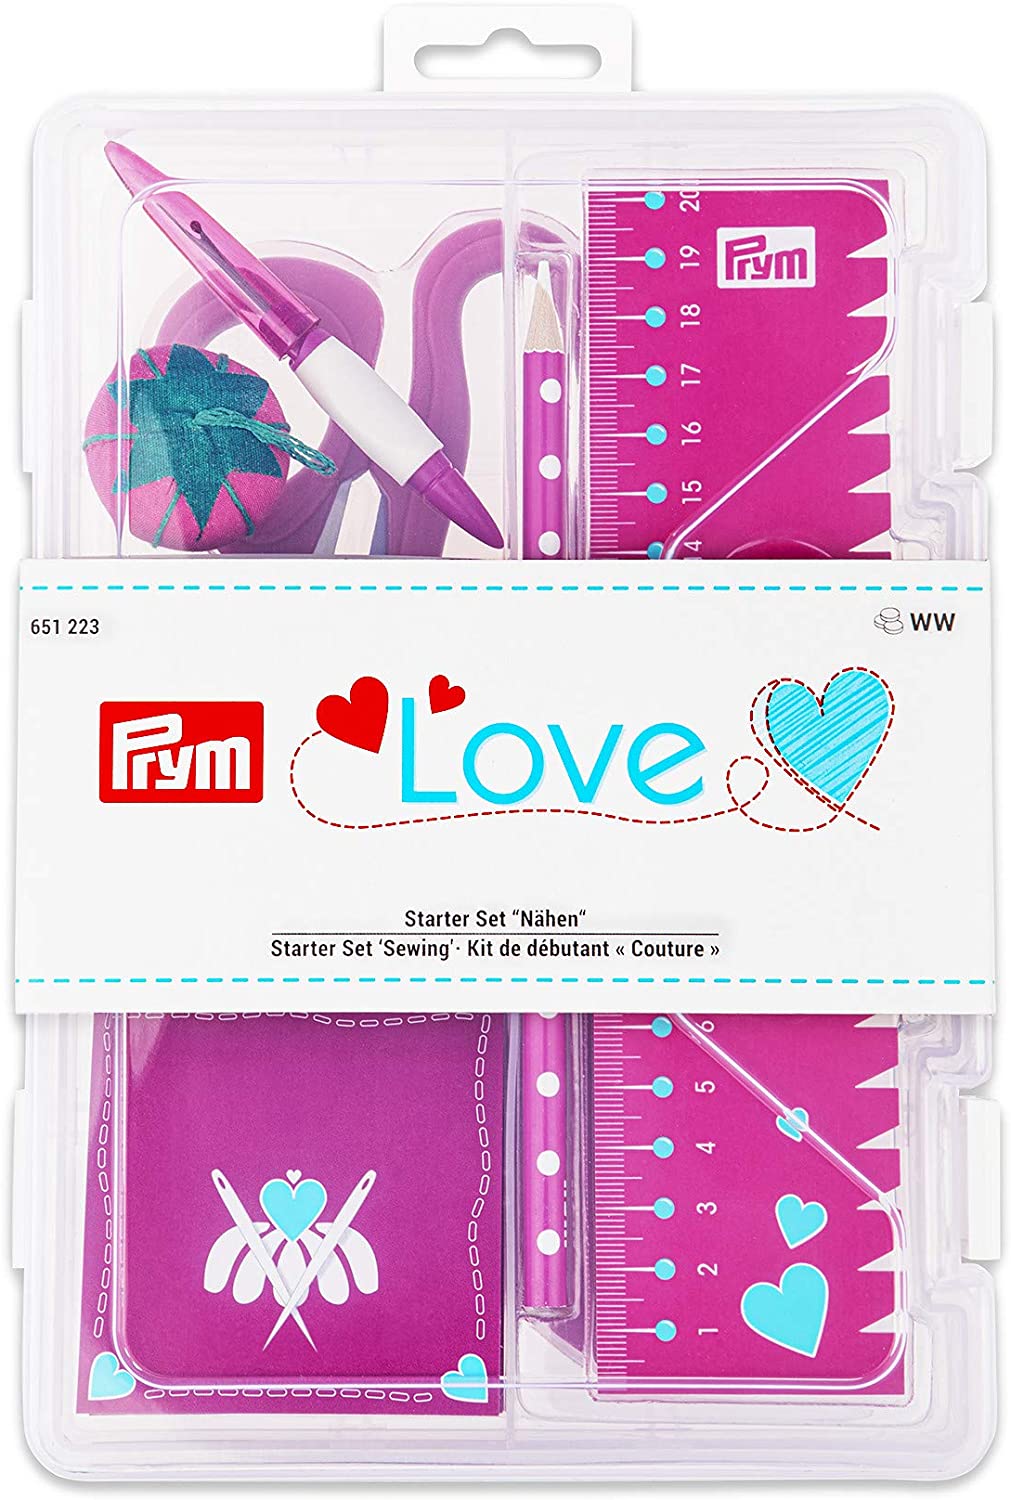 Gift Idea - Prym Love Starter Set Sewing Kit